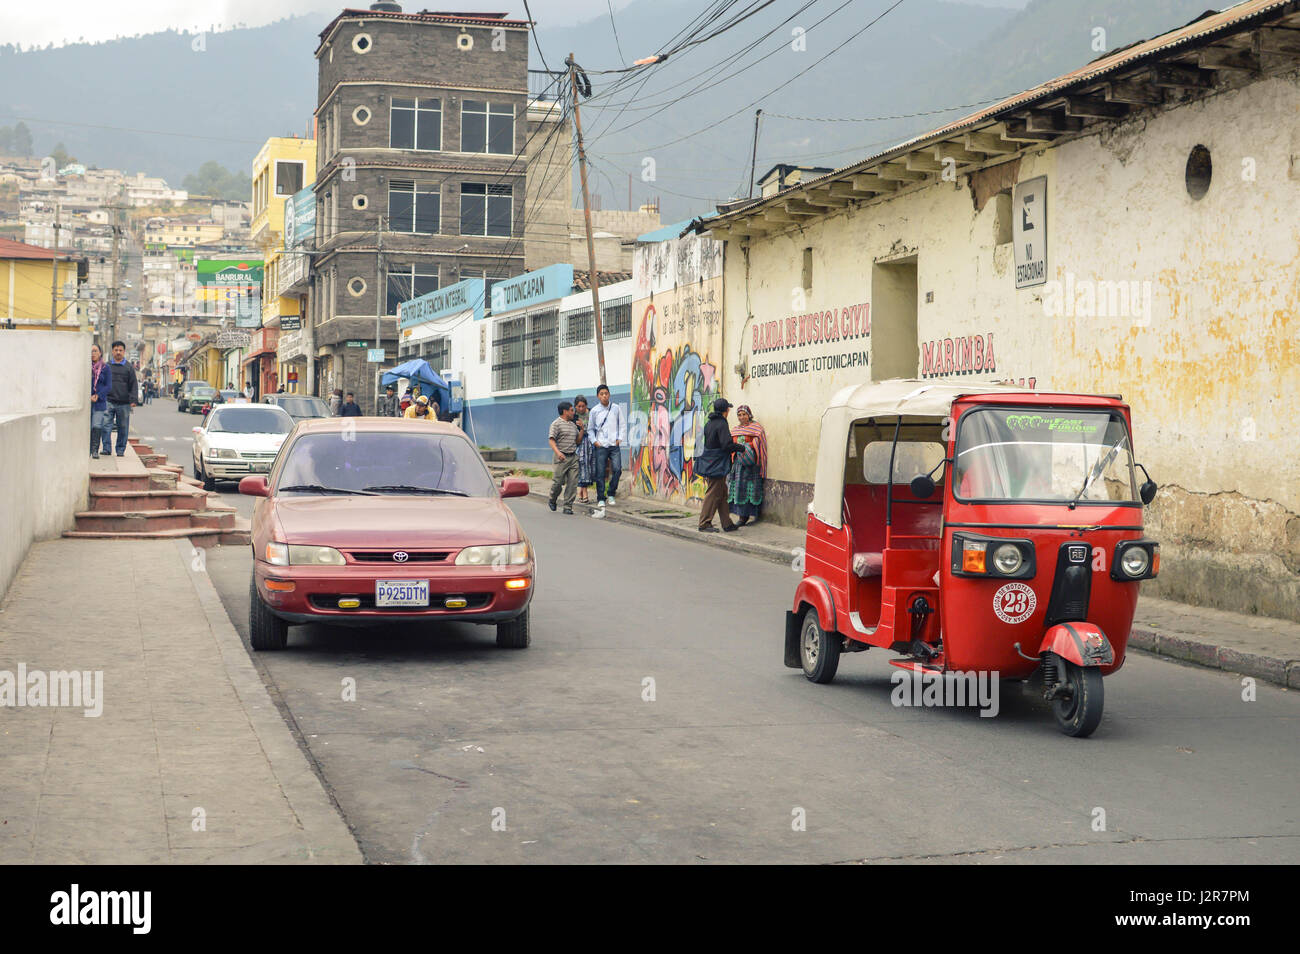 Totonicapan, Guatemala - 10, 2015 Februar: Maya Menschen und Autos sind auf den Straßen eines kleinen Kolonialstädtchen totonicapan in Guatemala in einem Bus gesehen Stockfoto